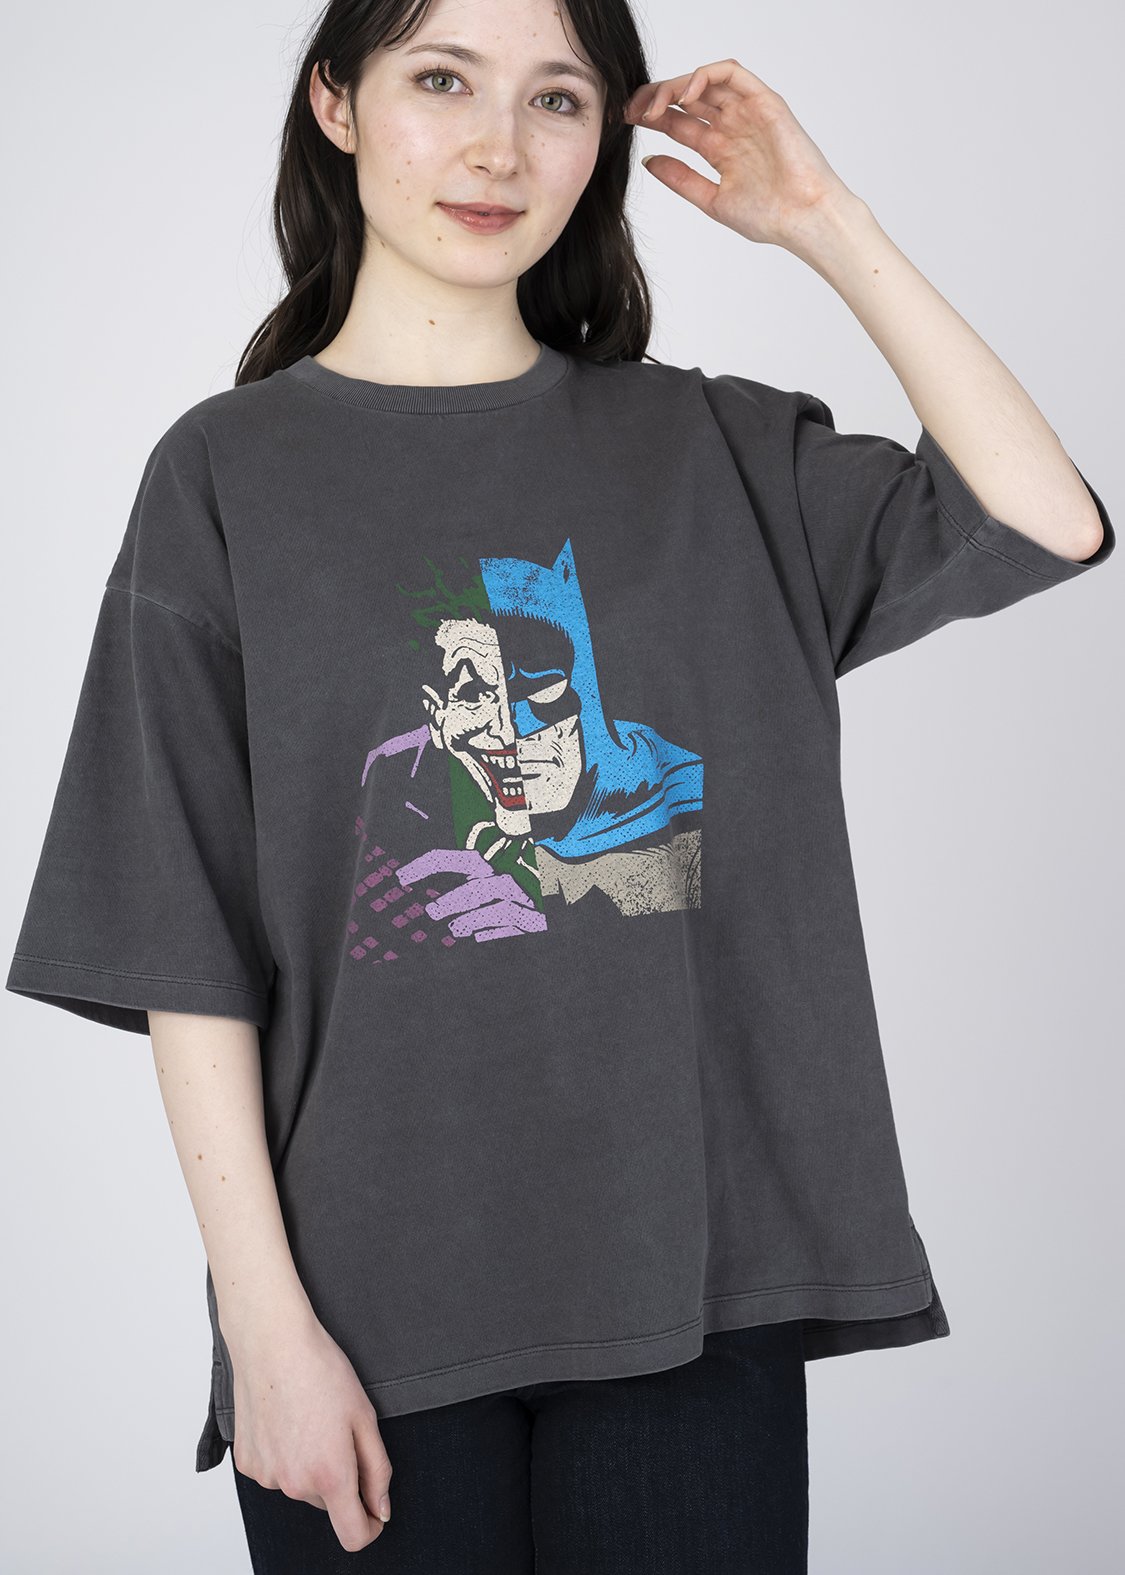 グラニフ「バットマン コラボレーション」 5分袖Tシャツ「ハーフフェイス」